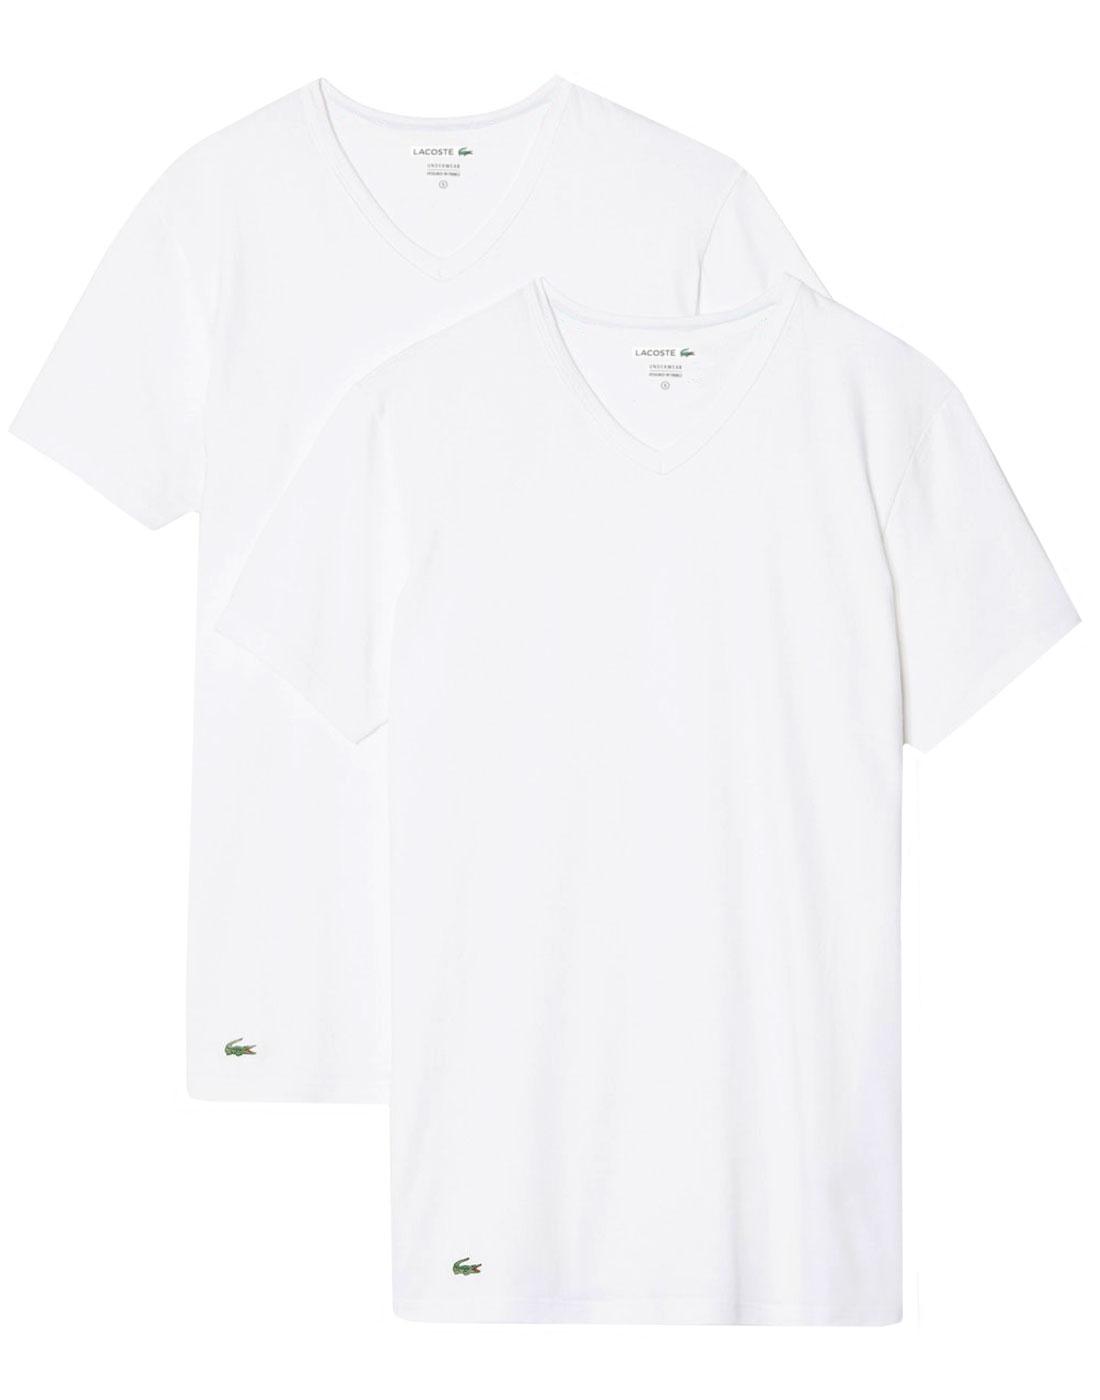 LACOSTE Men's Retro 2 Pack Boxed V-Neck T-Shirt in White